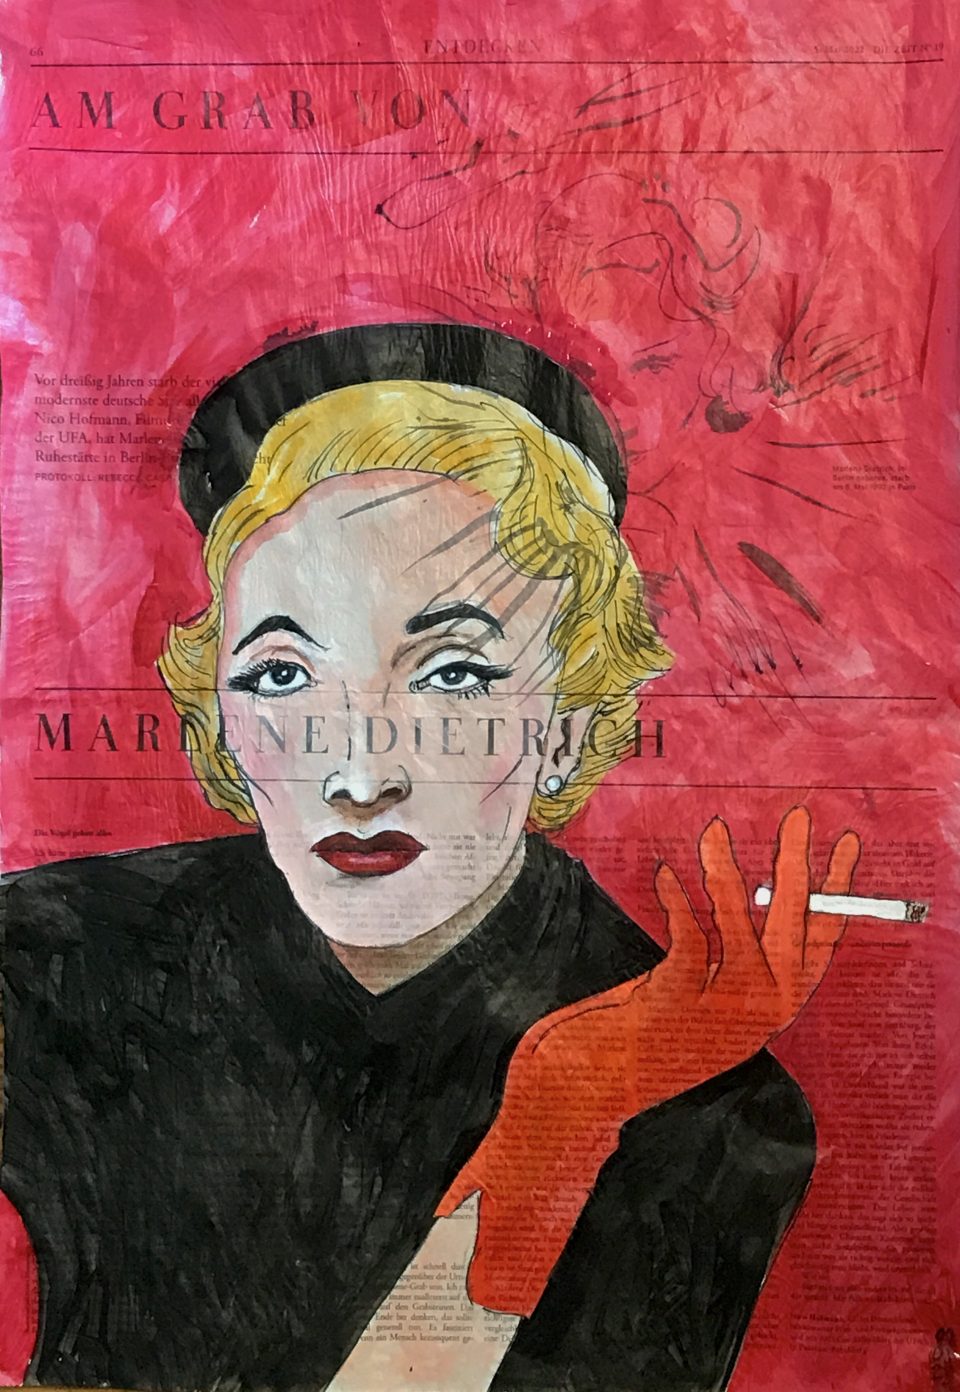 Marlene Dietrich – Porträt von rauchender Marlene auf ganzer Zeitungsseite 56 x 40 cm mit Überschrift "Die reine Leere"